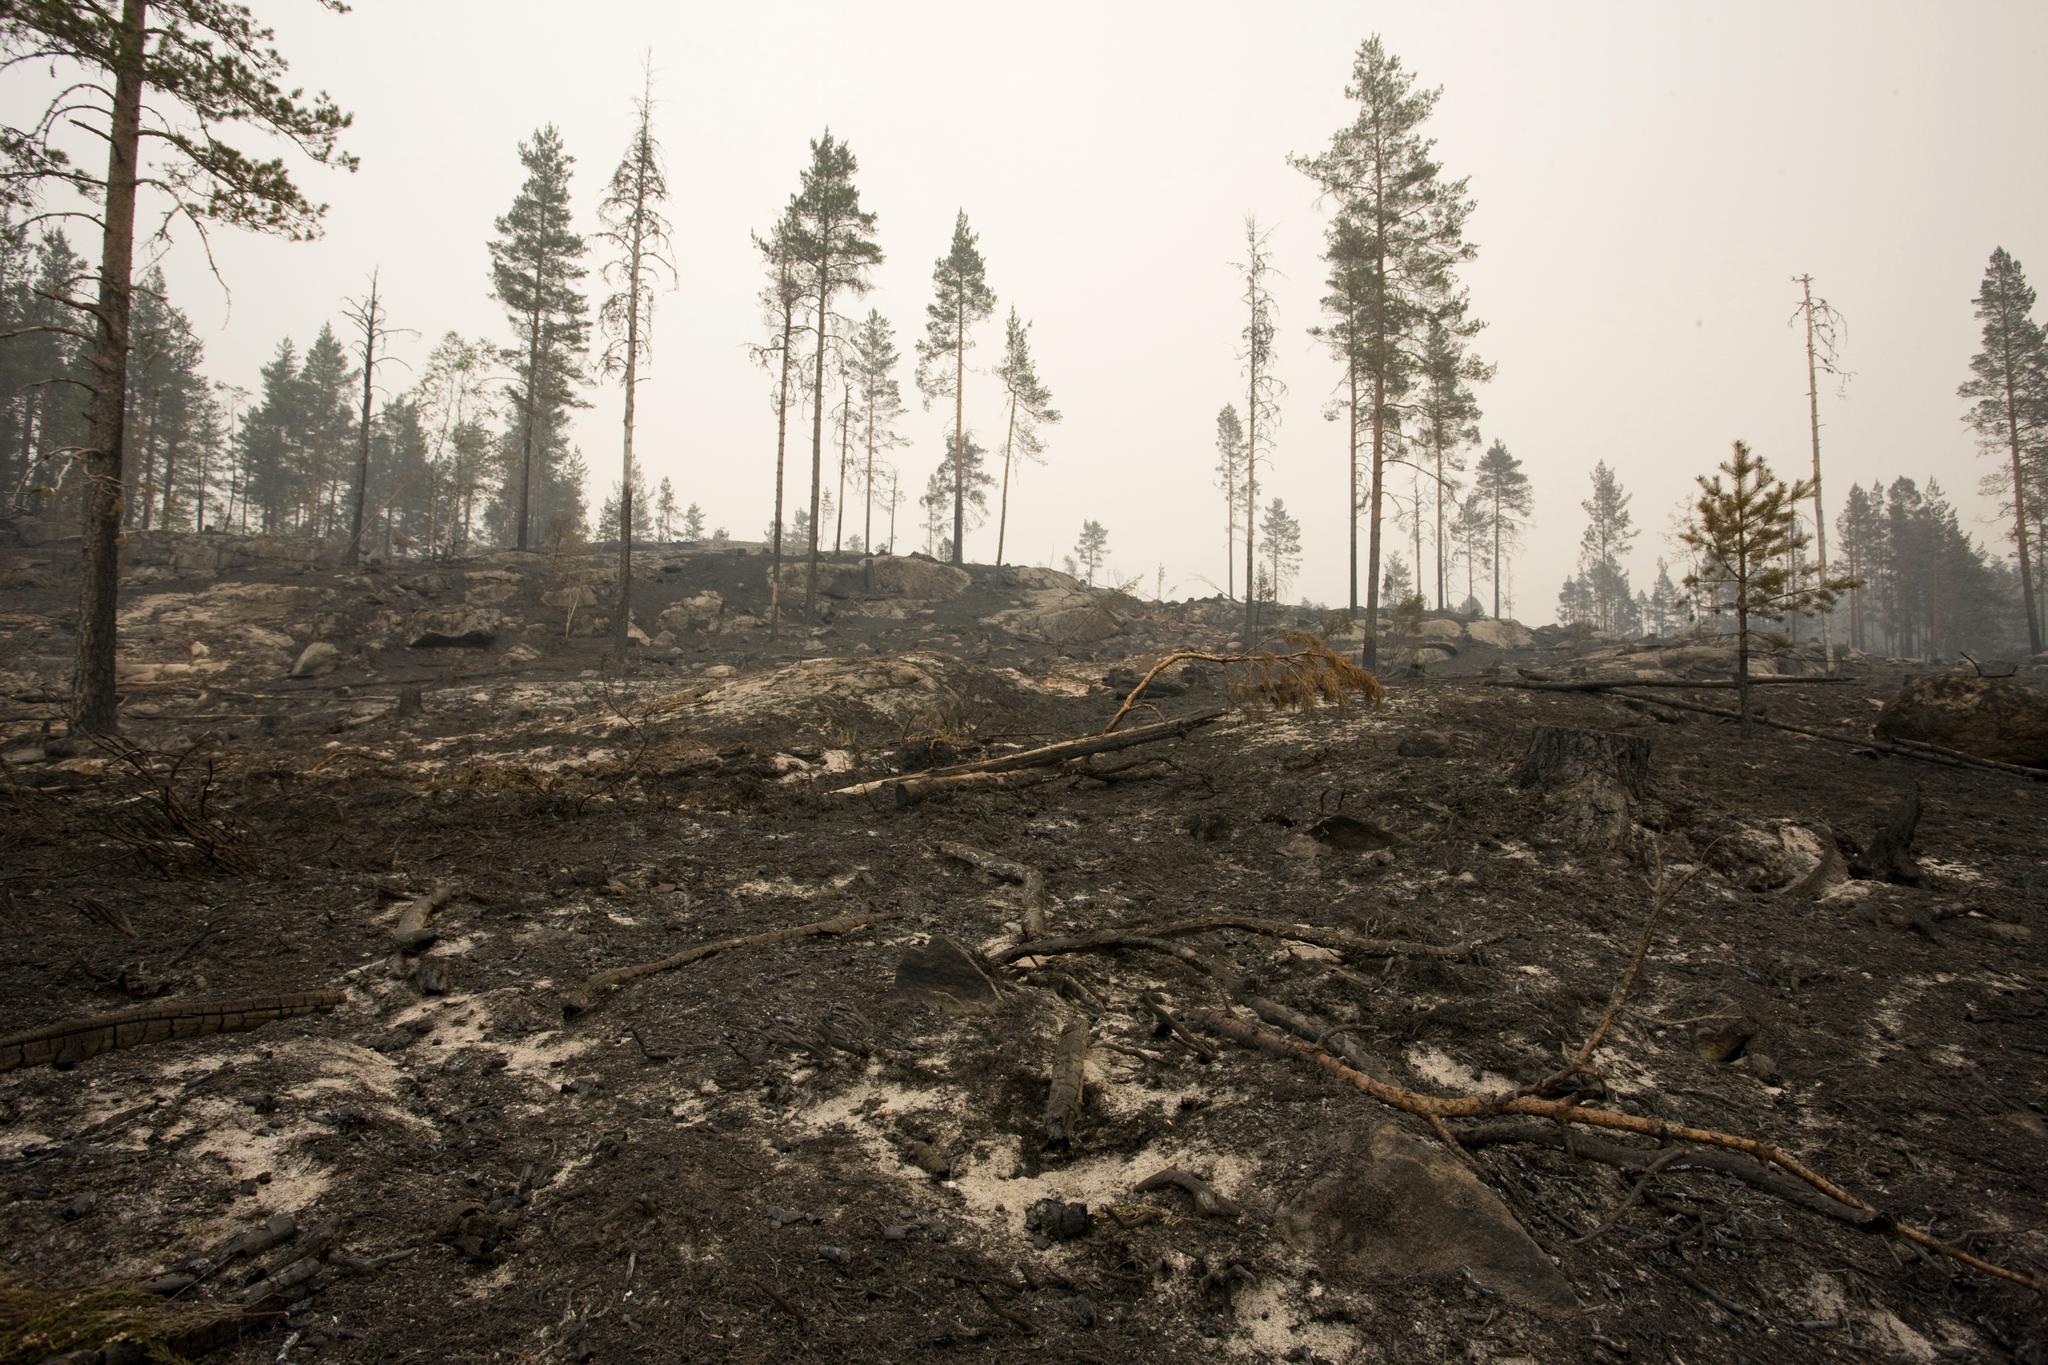  Rester av trær etter skogbrannen som herjet i Froland i 2008. 30.000 mål skog ble ødelagt i brannen.